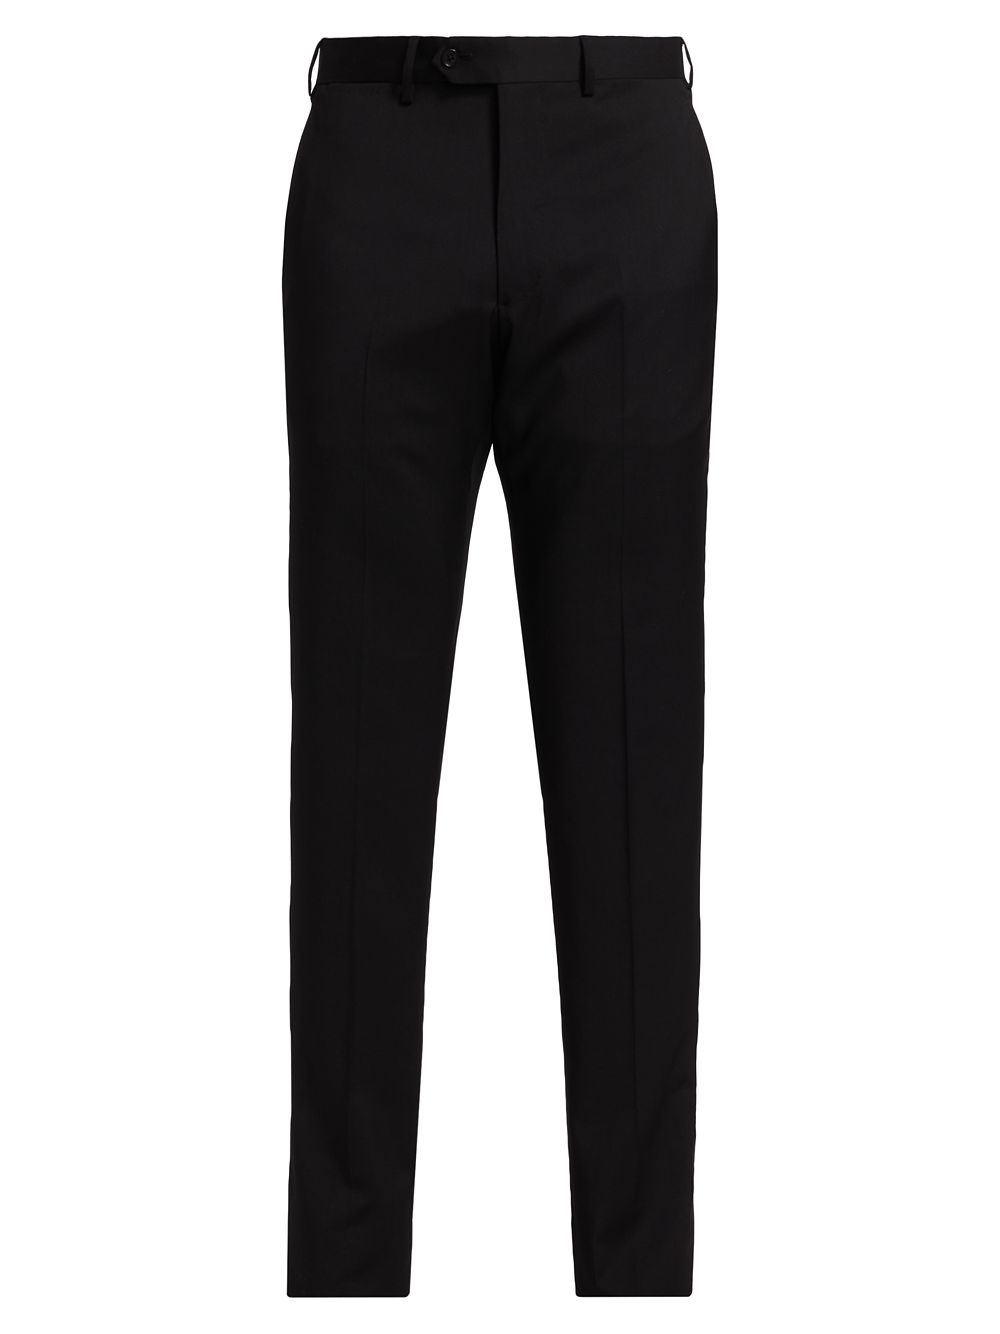 Классические шерстяные брюки Emporio Armani, черный брюки шерстяные классические 46 размер